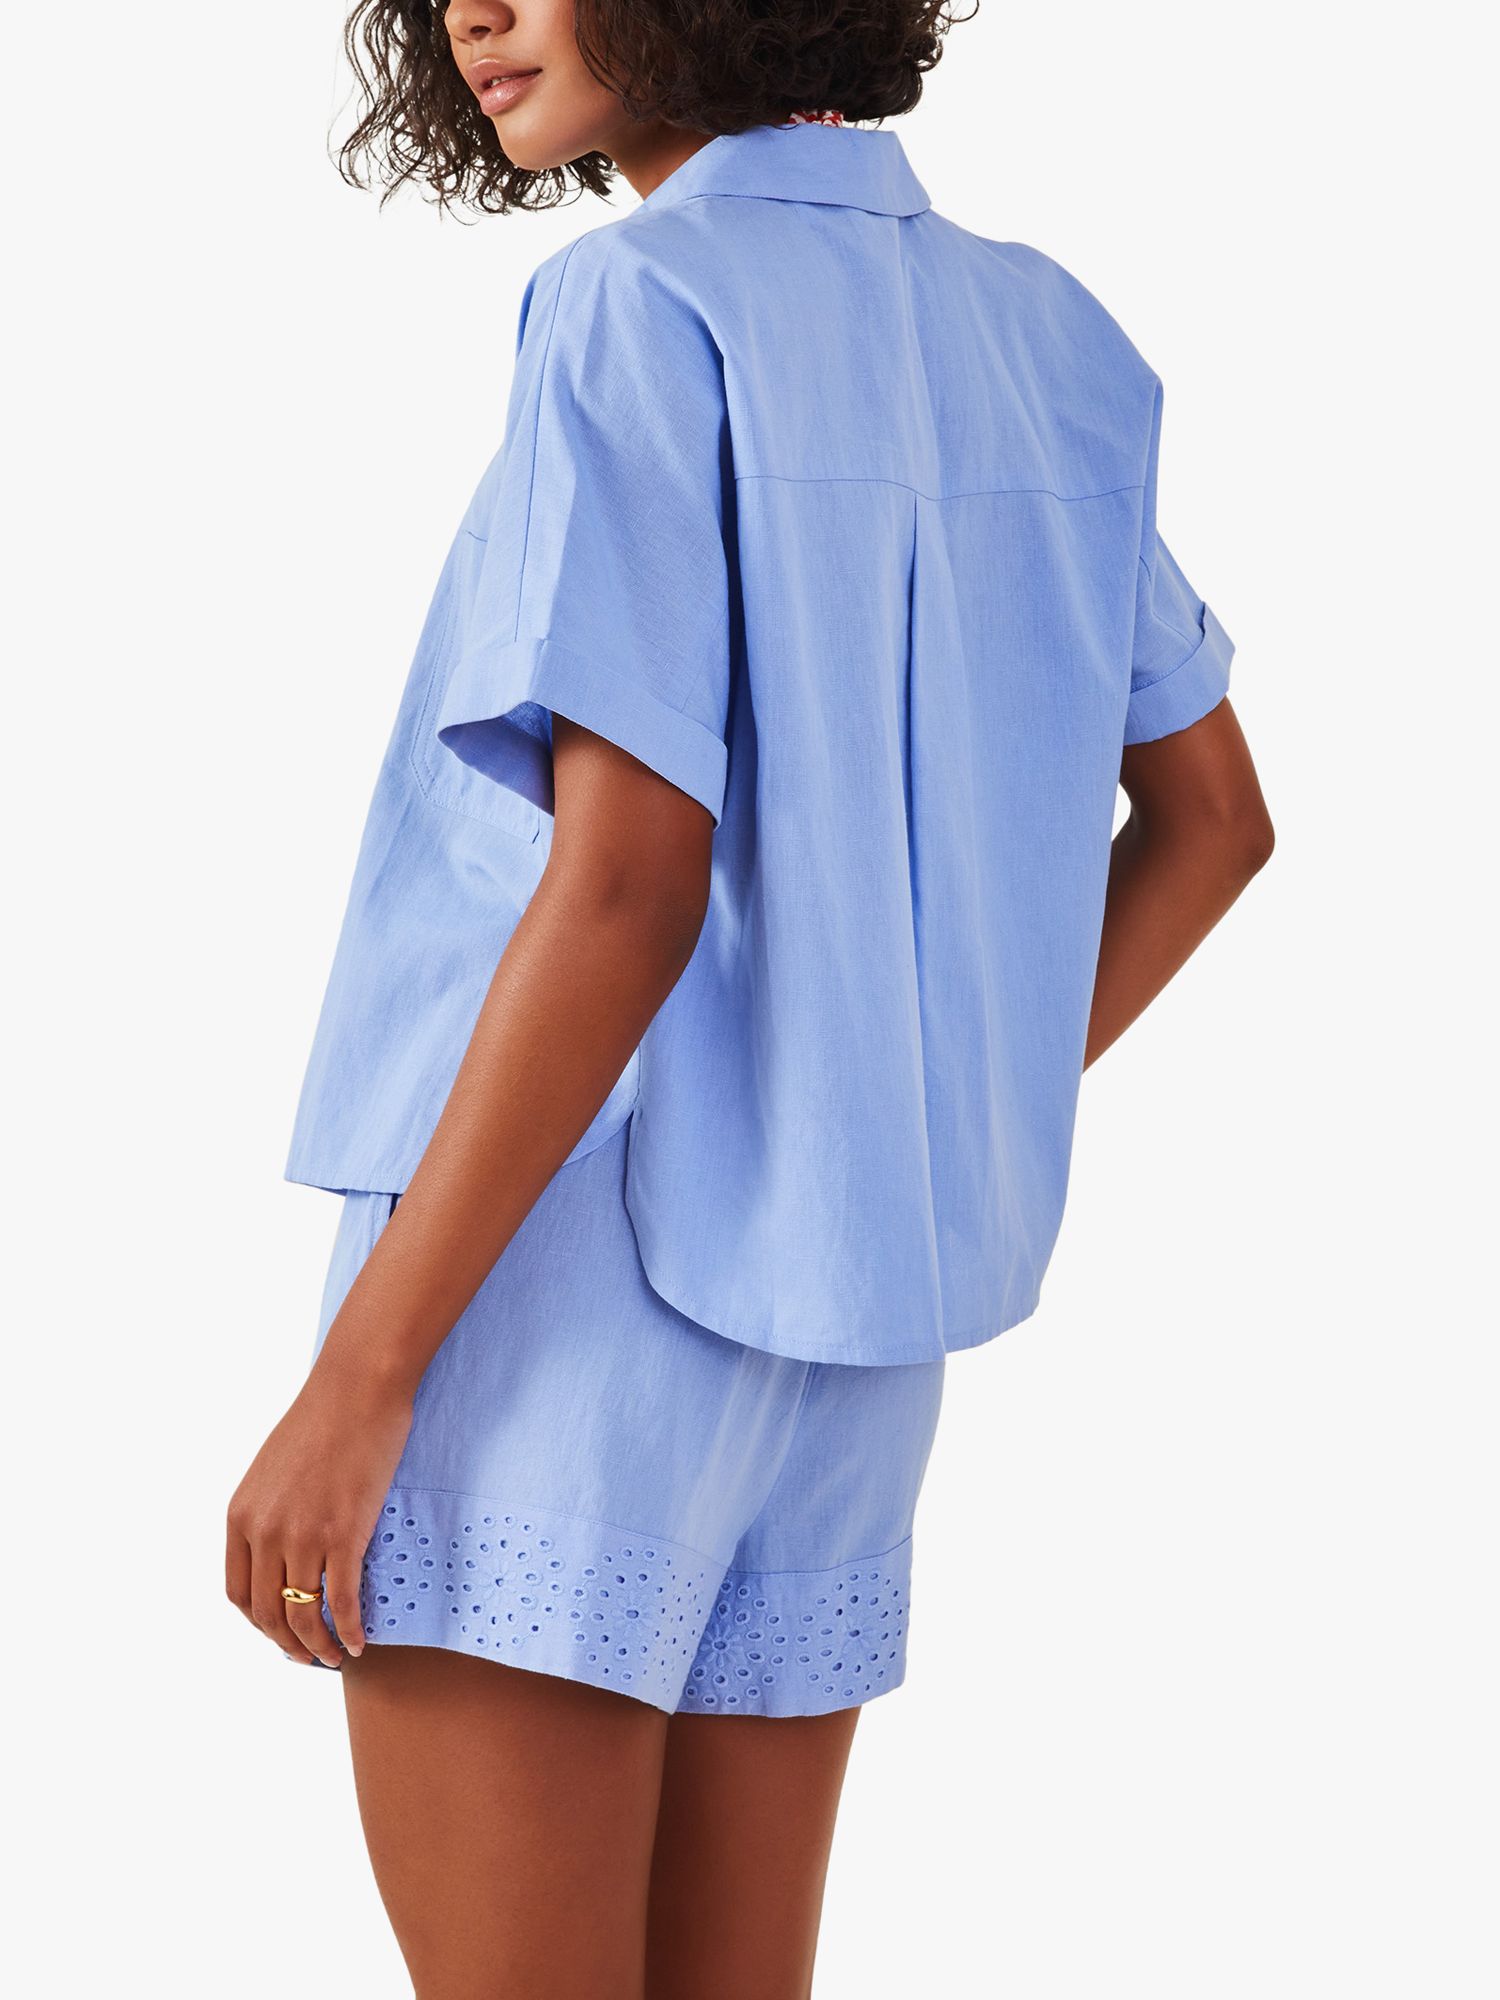 Accessorize Boxy Linen Blend Beach Shirt, Mid Blue, M